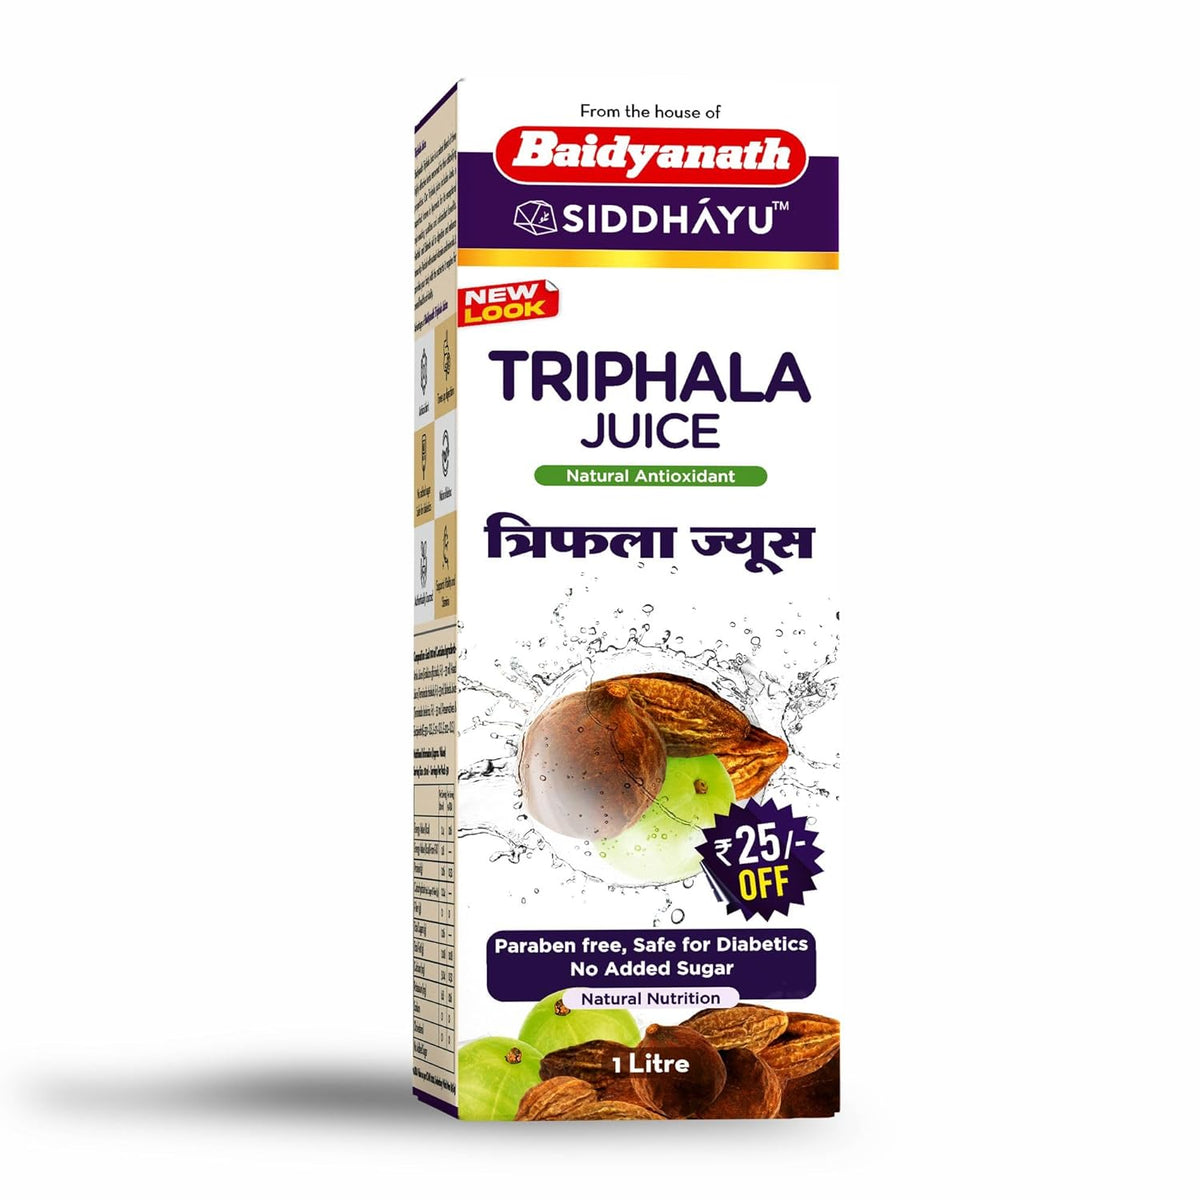 Baidyanath Ayurvedic (Jhansi) Triphala Juice